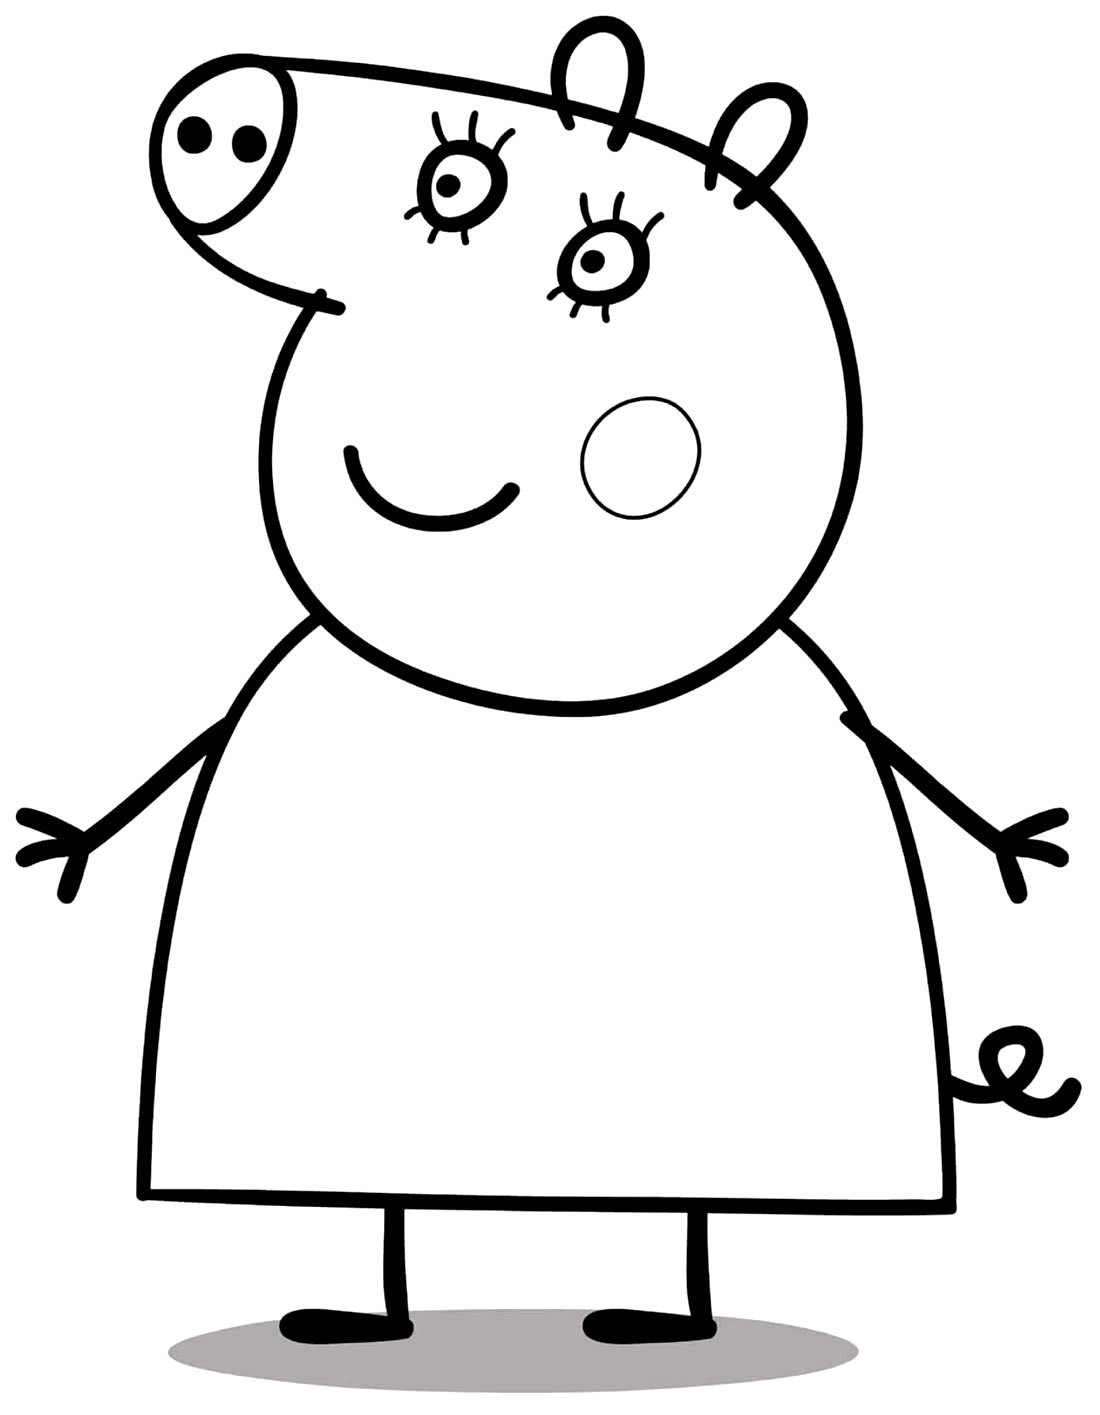 Desenho para colorir da Peppa Pig